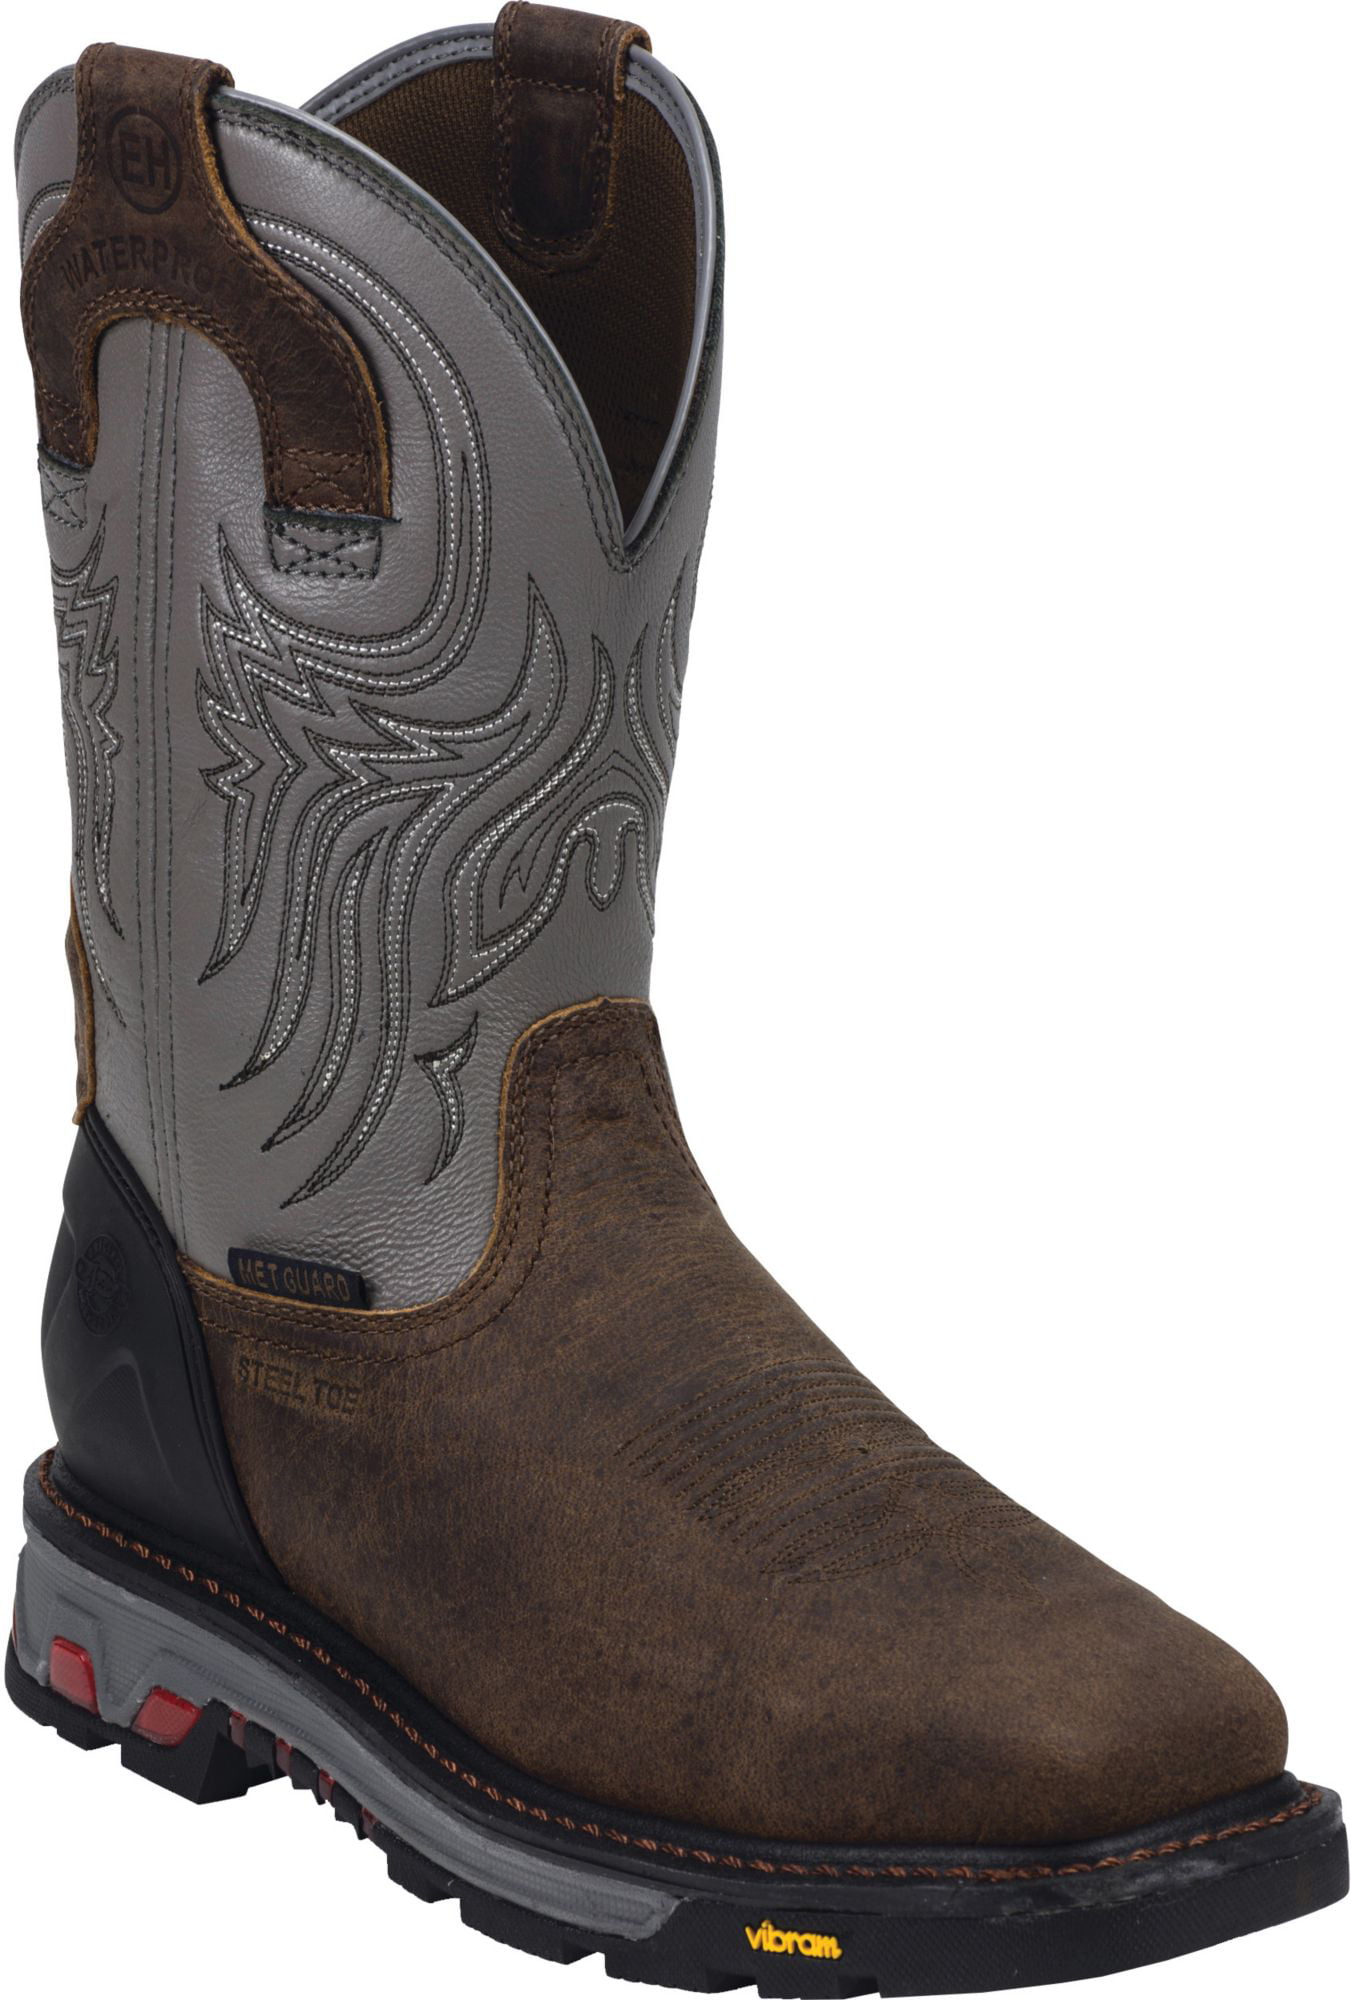 steel toe metatarsal cowboy boots